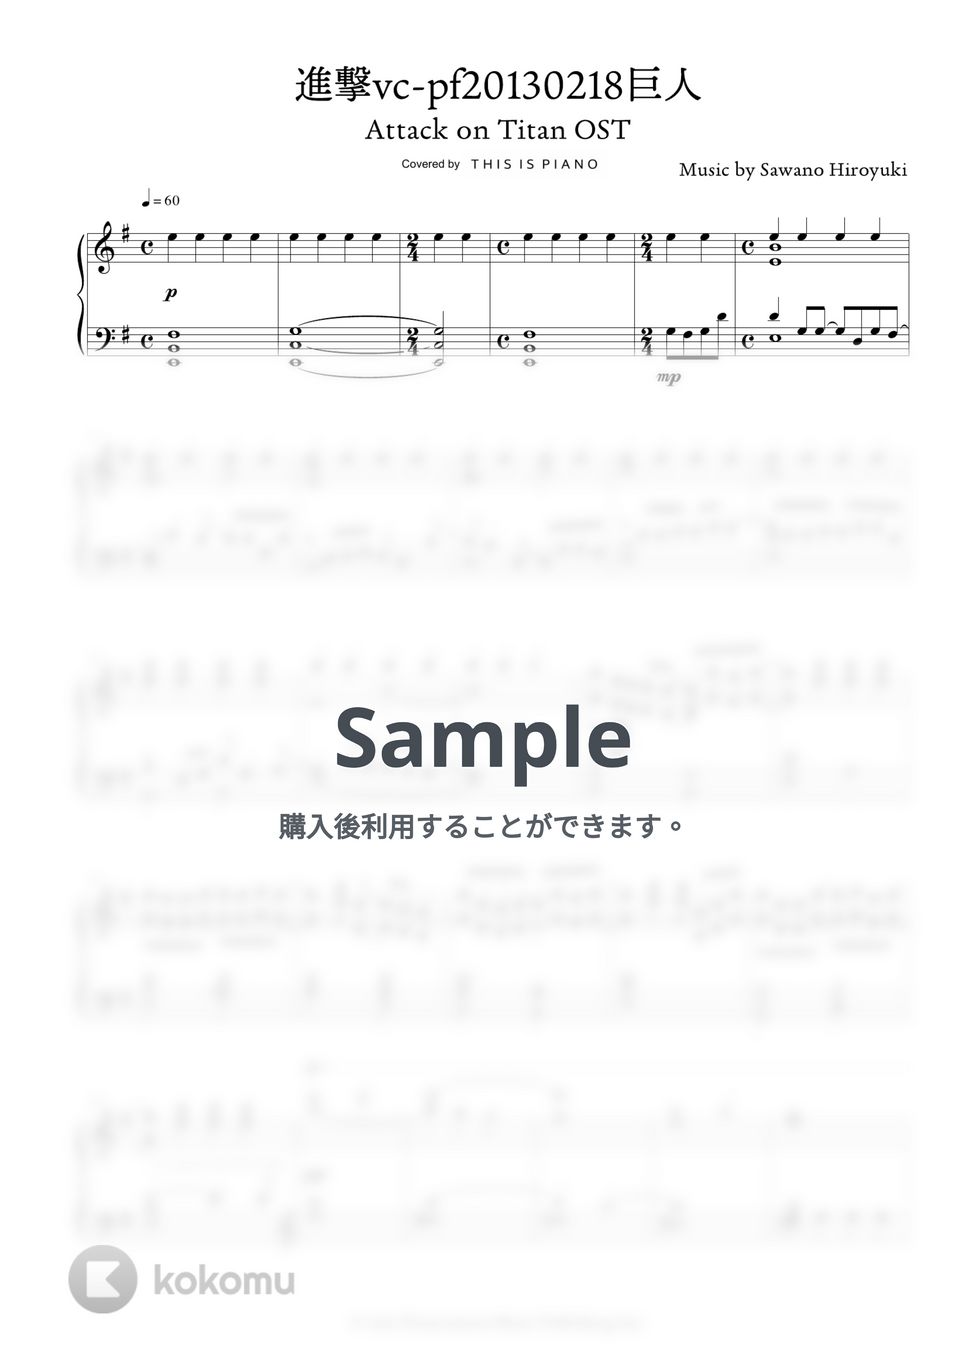 澤野弘之 - 進撃vc-pf20130218巨人 (進撃の巨人 OST) by THIS IS PIANO